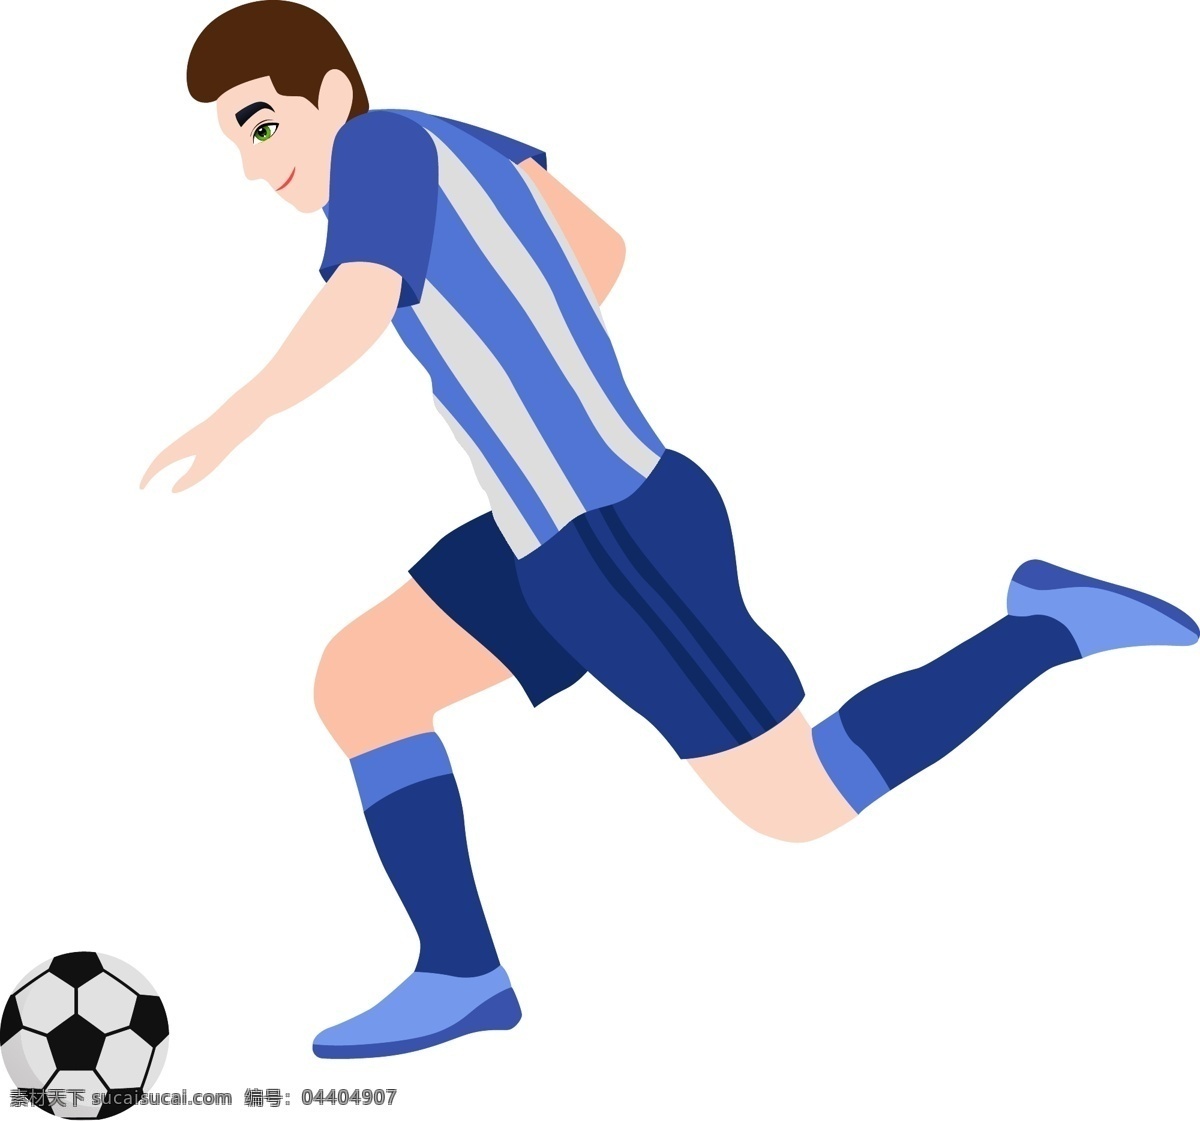 矢量 卡通 人物 踢 足球 学生运动 体育活动 运动员 小 男孩 球员 球赛 足球训练 青少年 海报 赛海报 运动